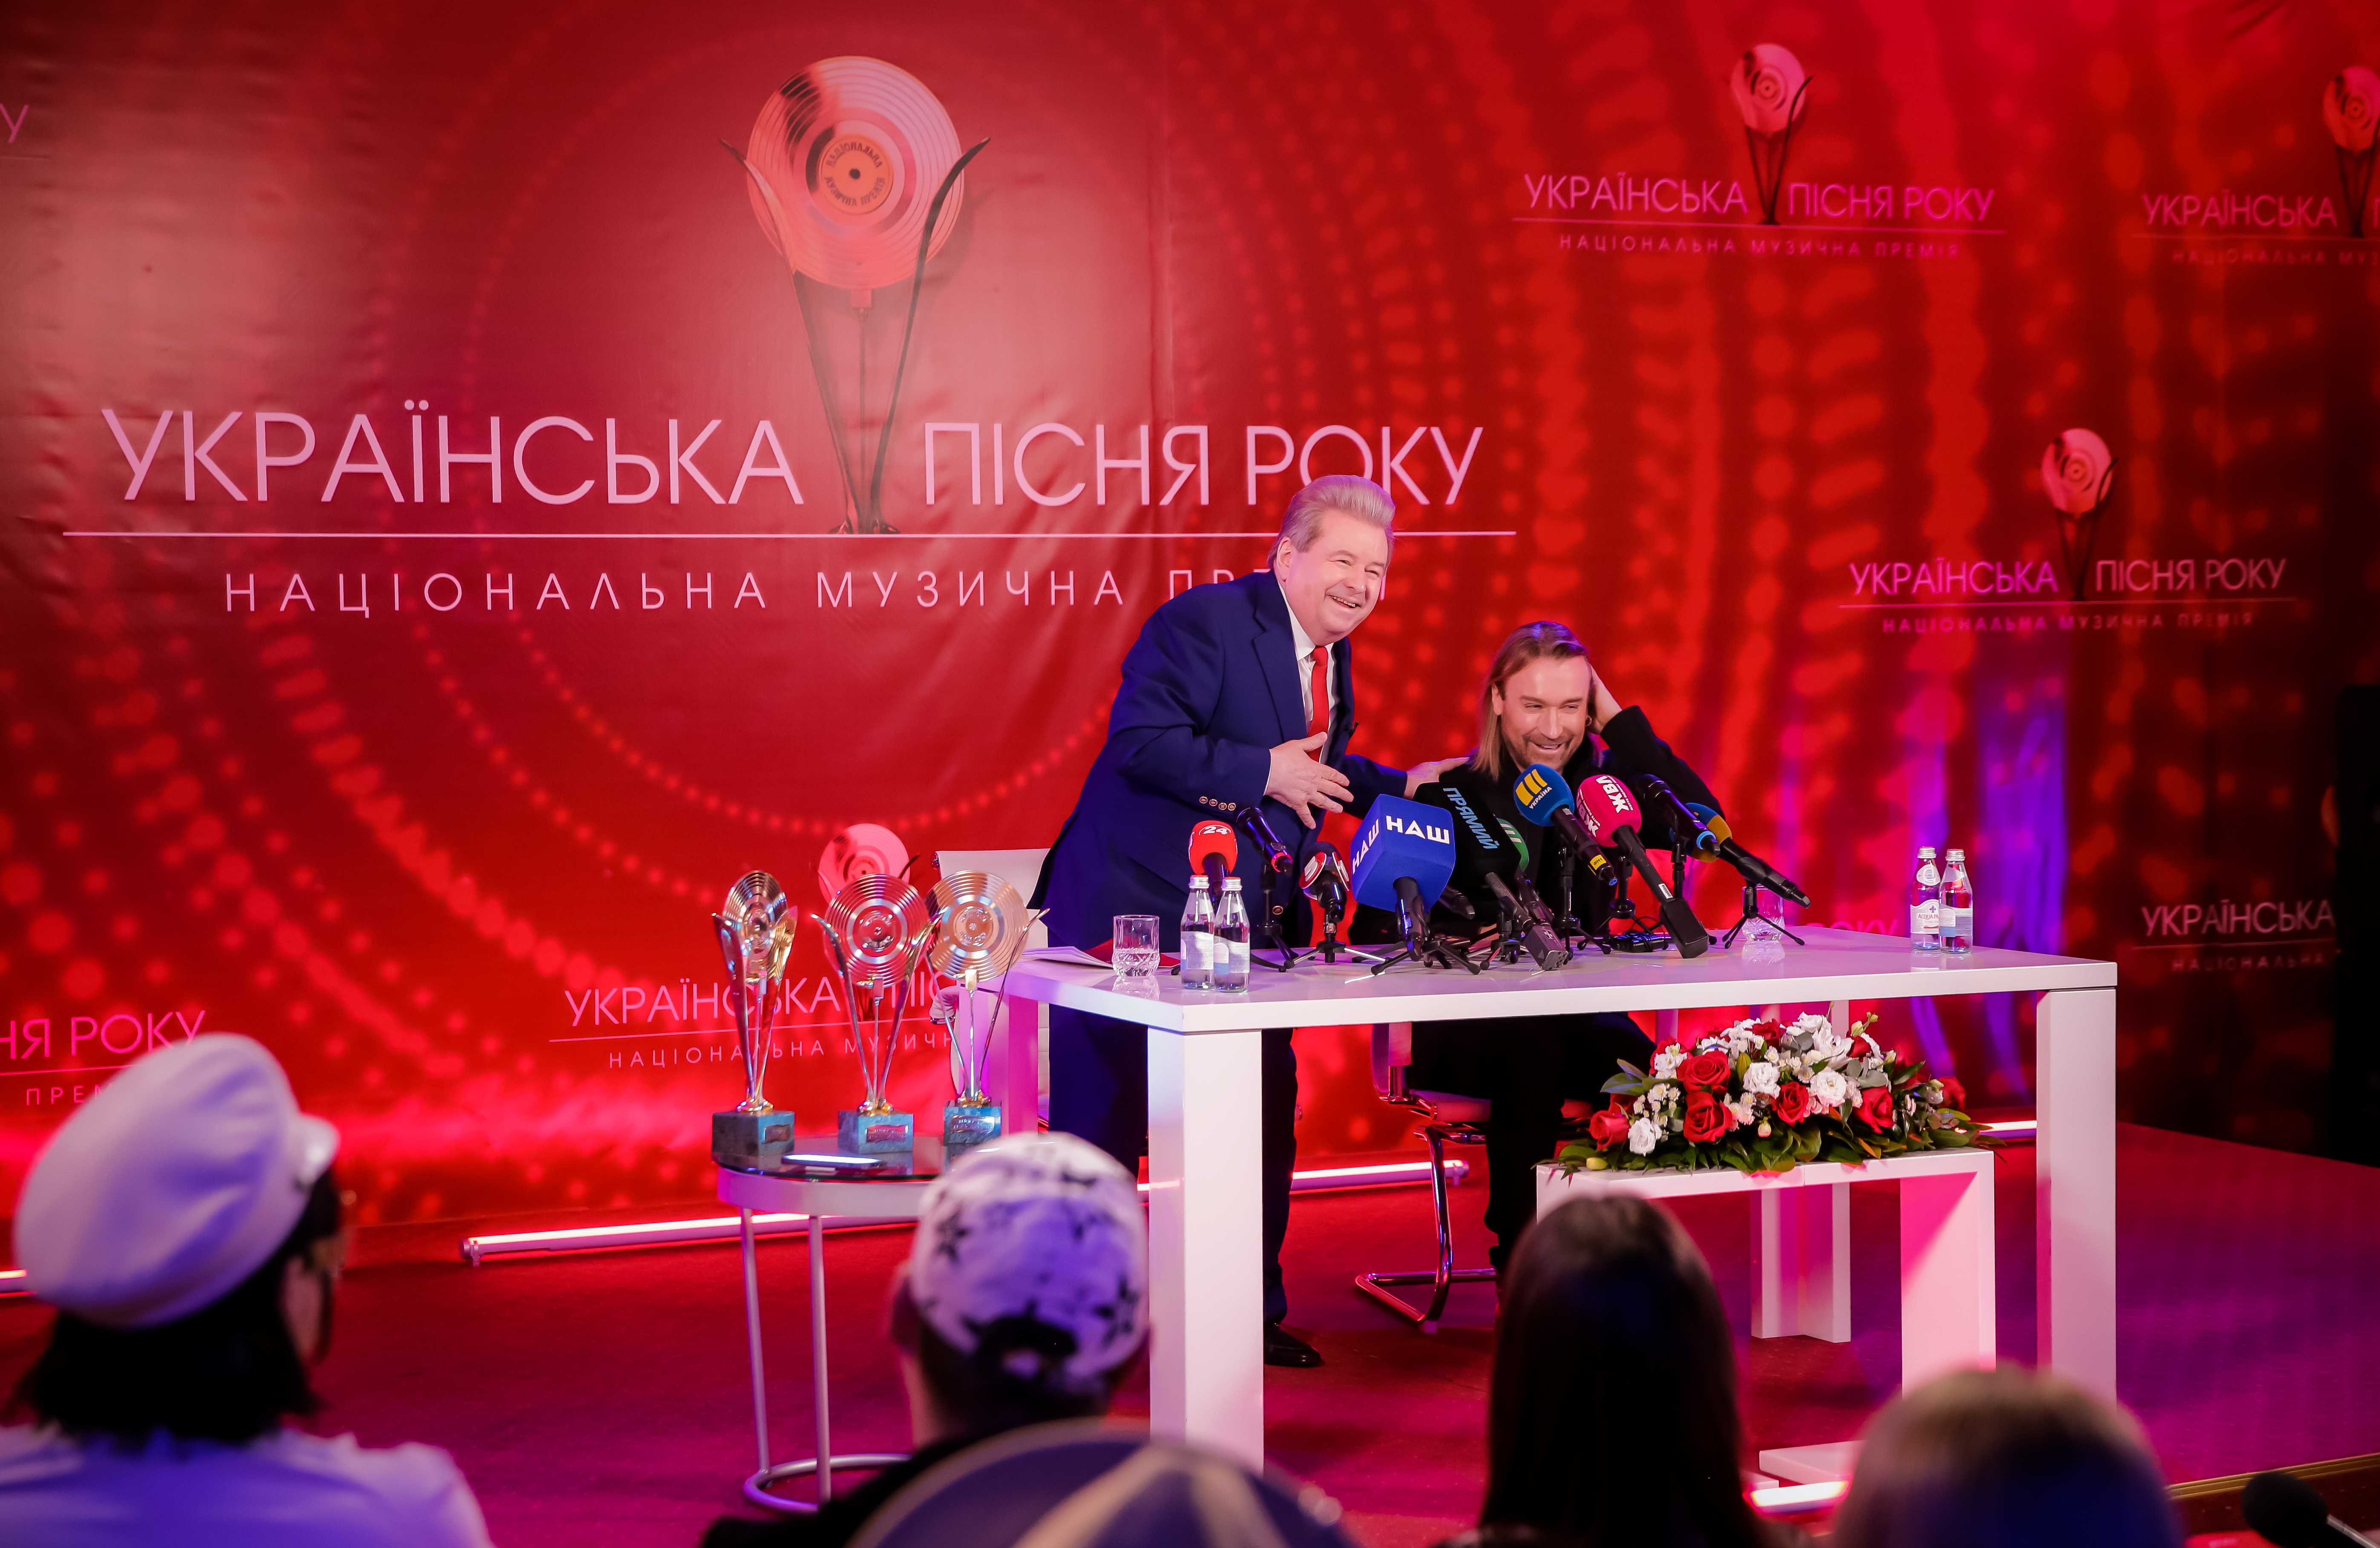  Олег Винник і Михайло Поплавський анонсували музичну премію «Українська пісня року 2020» - фото 5